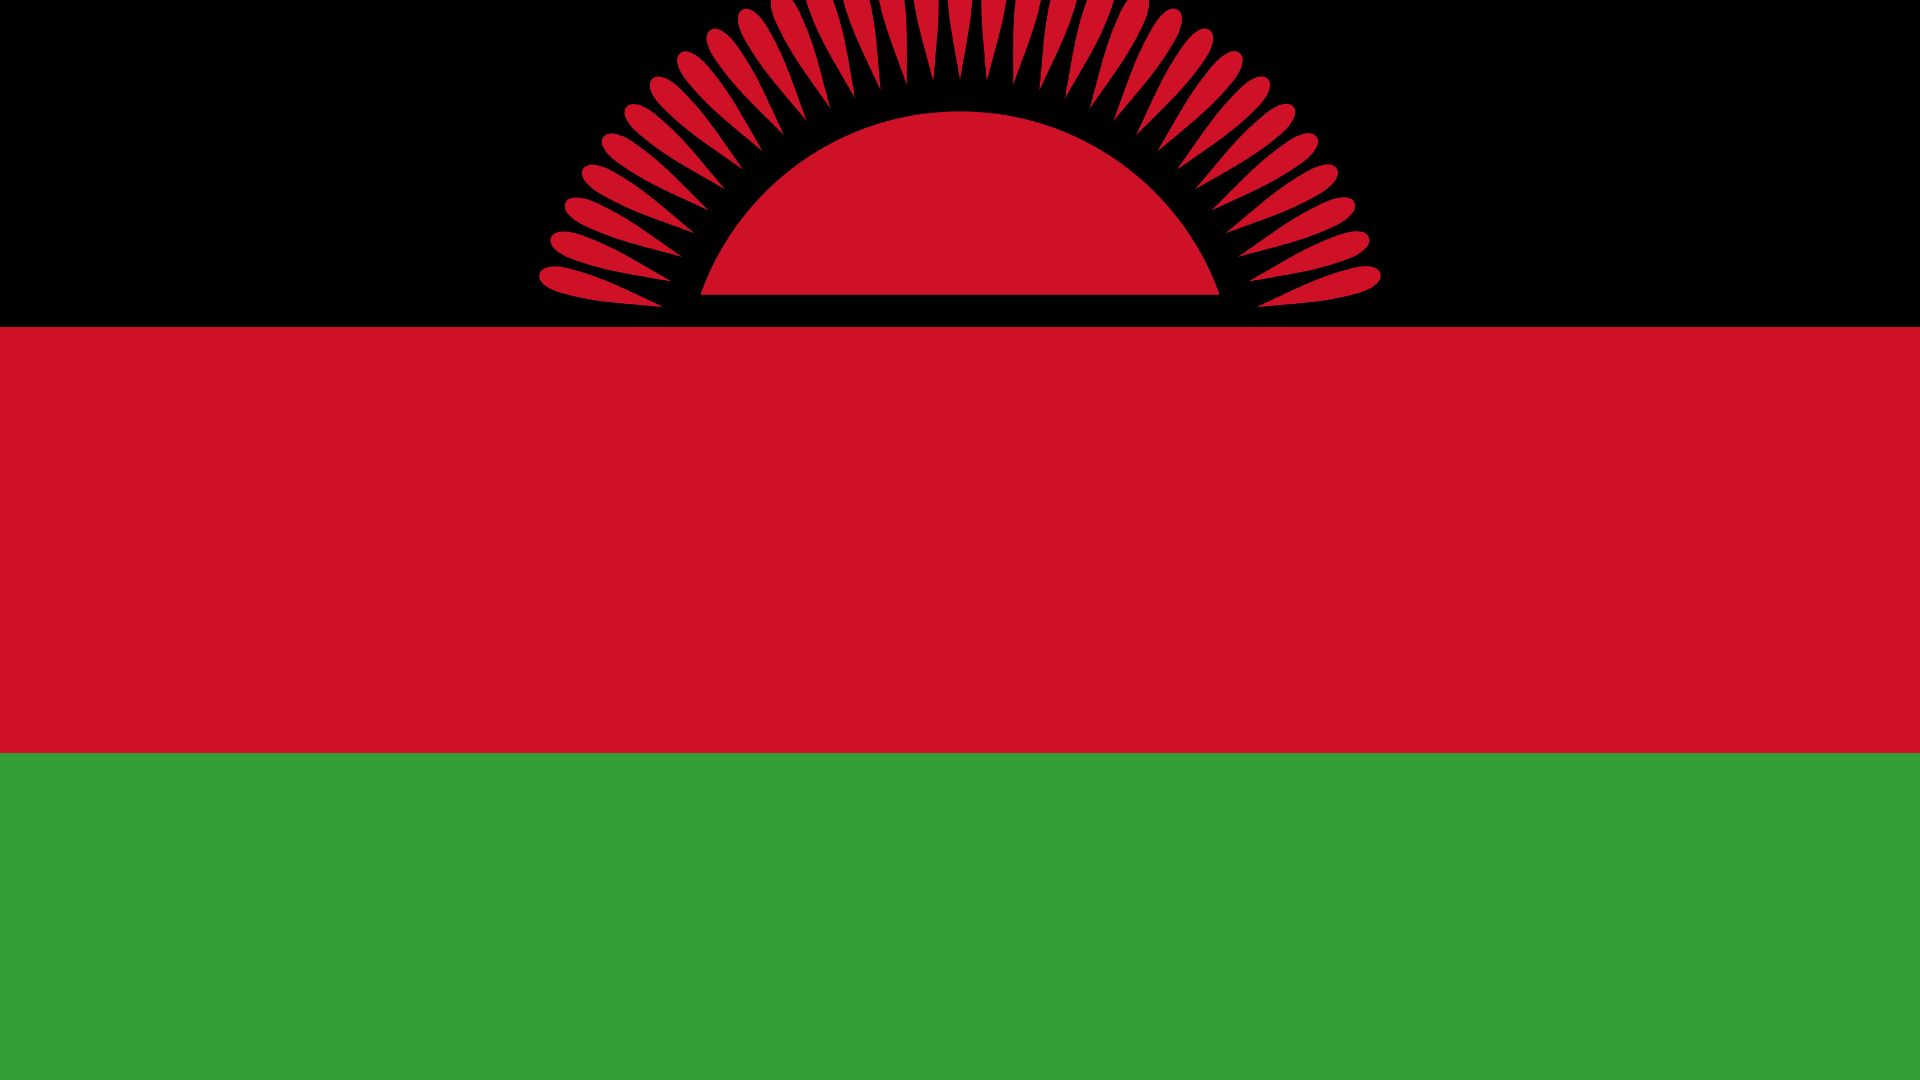 A bandeira possui faixas vermelhas e pretas e um sol vermelho no alto.